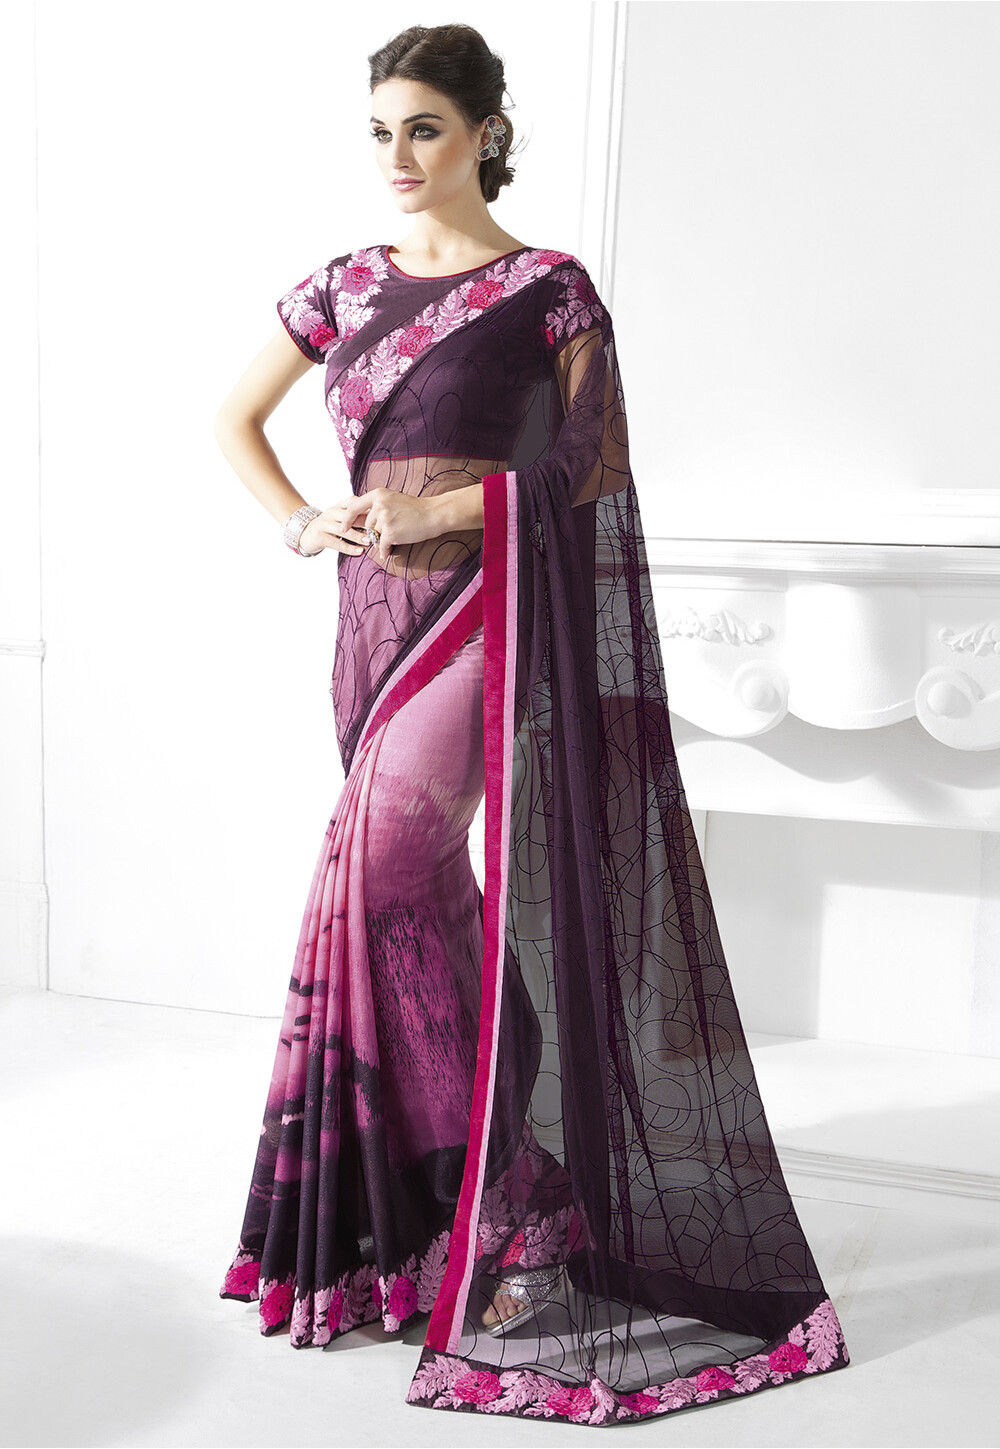 Himaja Purple Half Saree | Half saree designs, Half saree, Half saree  lehenga